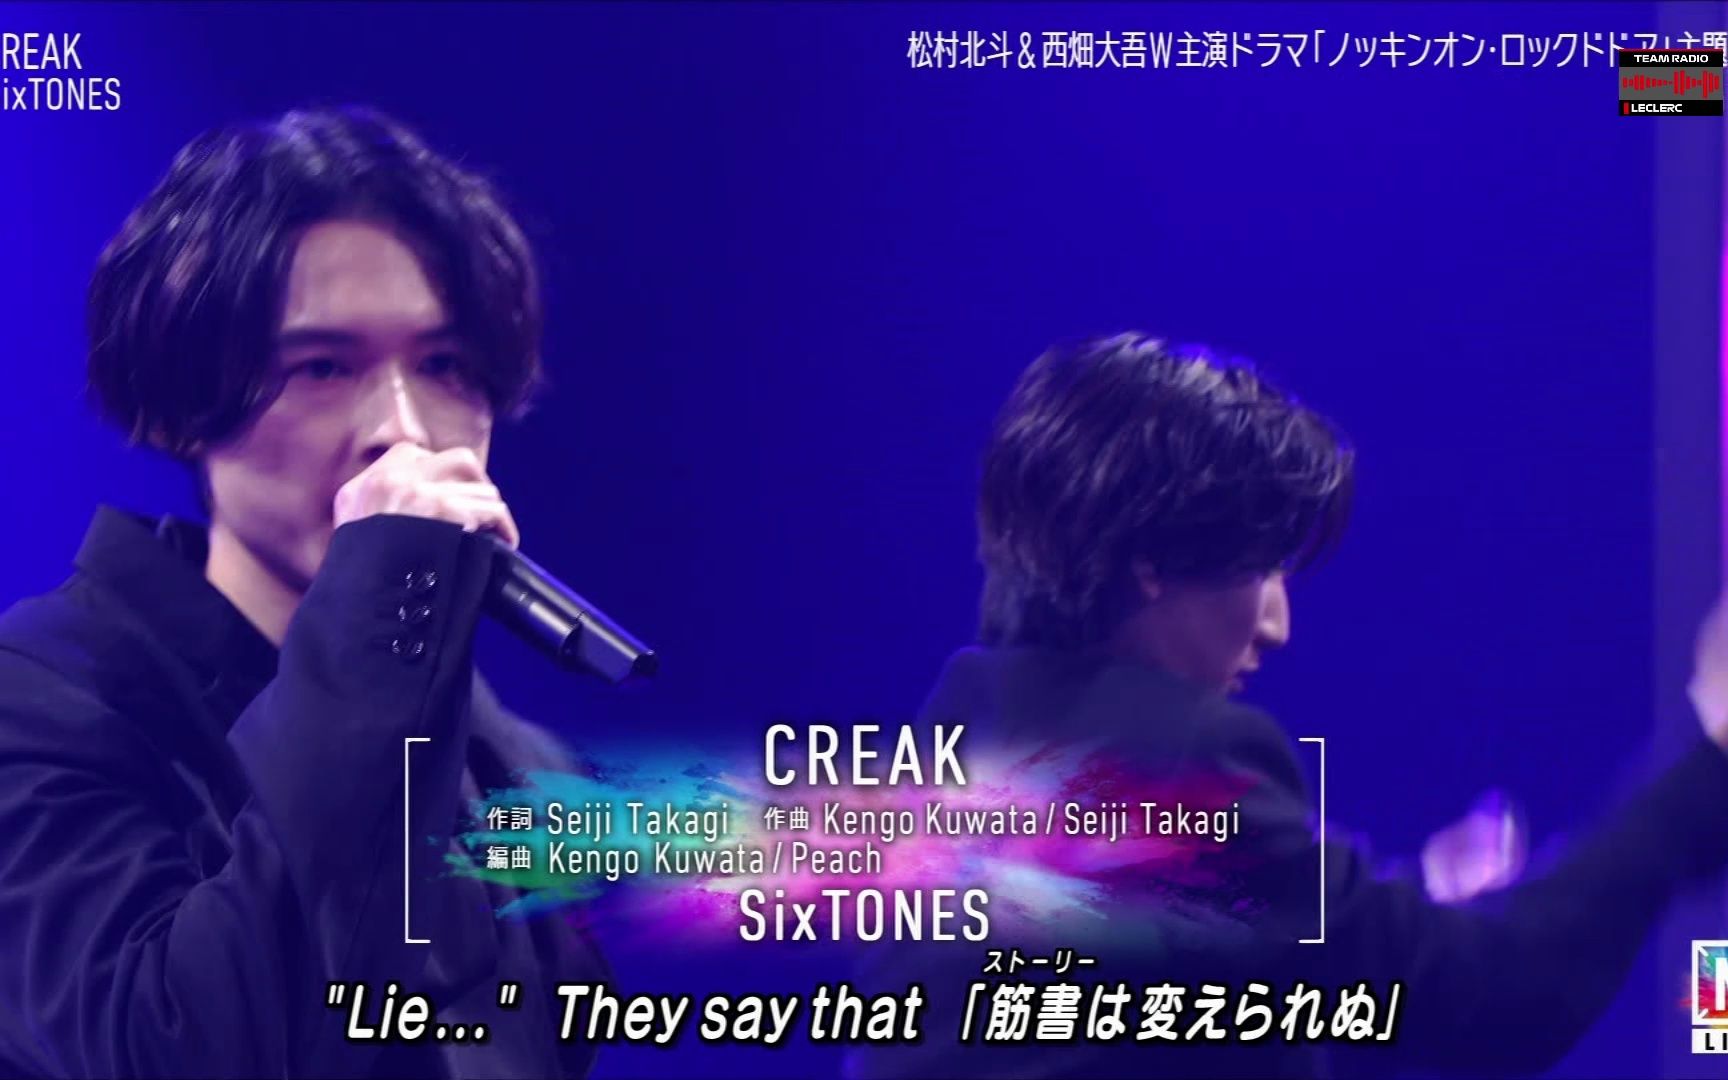 【Live】SixTONES「CREAK」